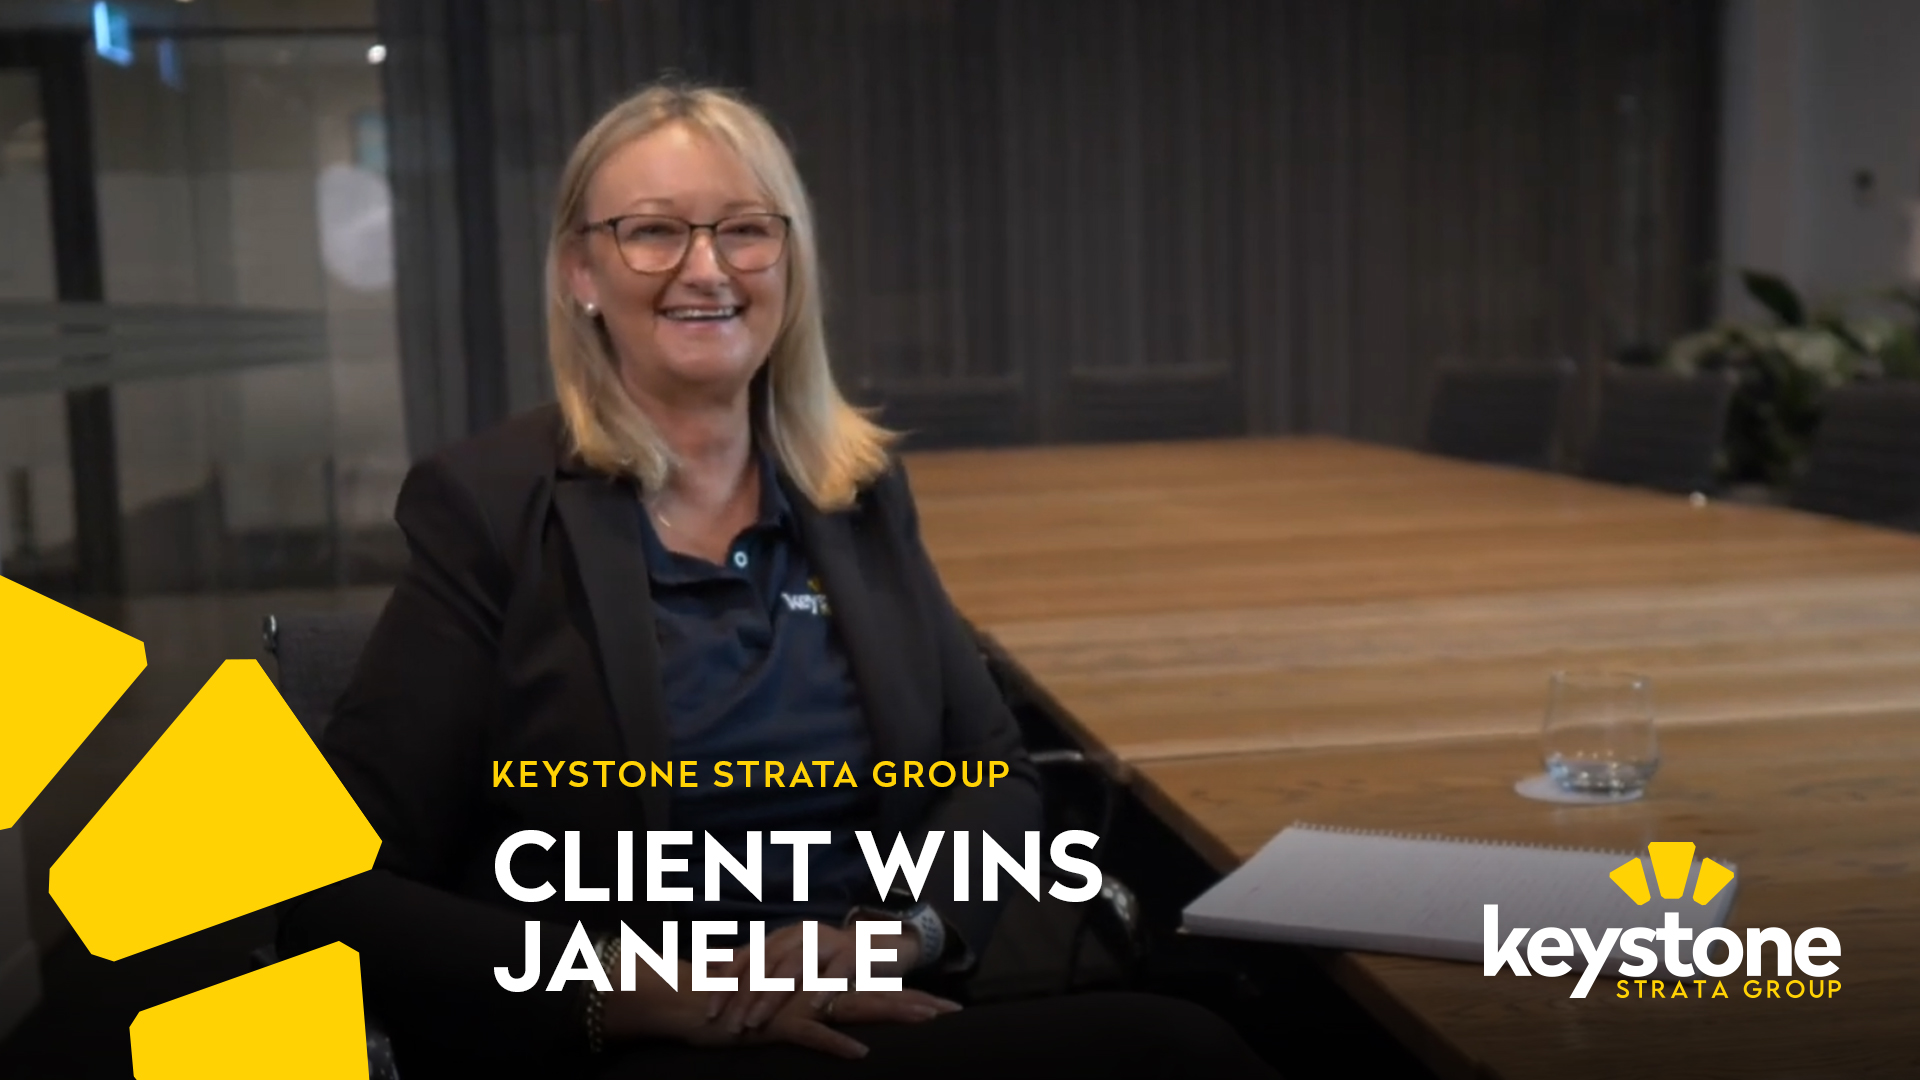 Janelle Client Wins